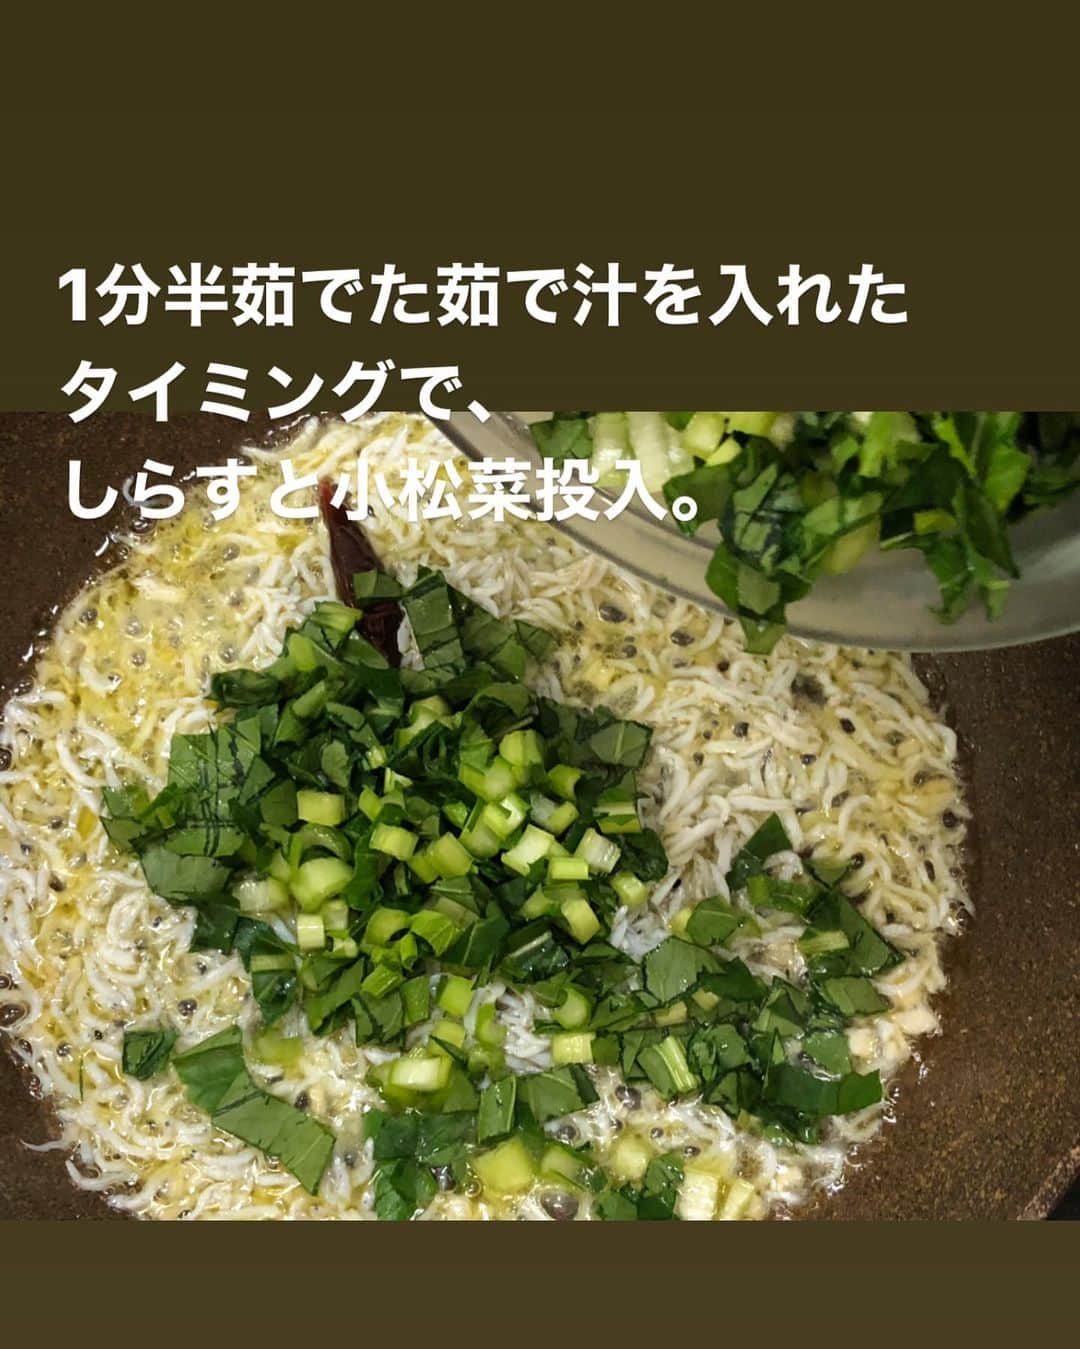 utoshさんのインスタグラム写真 - (utoshInstagram)「【レシピ・動画付き】しらすと小松菜のオイルパスタ！﻿ ﻿ しらすと言えば白米にがちっとあうイメージですが、パスタにも本当に良く合います。しらすは万能なんですよ。﻿ そしてプラスする野菜は小松菜。﻿ 小松菜見たいな葉物をパスタに使う時は細かく刻むとよく馴染むのと、火の通りが均一になるのでオススメ。﻿ ﻿ ✔️〈この料理のポイント〉﻿ しらすの味を味わうために絶対にんにくを焦がさない様にする。最初の段階で焦げそうだったら無理ににんにくを炒めず、弱火にしたままにする。しらすのうまみがあるのでそれでも十分美味しく食べる事ができます。﻿ ﻿ ﻿ レシピはこちら↓﻿ ＿＿＿＿＿﻿ ﻿ しらすと小松菜のオイルパスタ（2人分）﻿ ﻿ 【材料】﻿ パスタ　160〜200g﻿ しらす　50g﻿ 小松菜 100g（4〜5本くらいの量）﻿ ﻿ ニンニク 1片﻿ 赤唐辛子 1個﻿ ﻿ パスタを茹でる用の塩﻿ ・水1リットルの場合　塩8g﻿ ・水2リットルの場合　塩16g﻿ ﻿ オリーブオイル　大さじ3﻿ 仕上げ用 EVオリーブオイル　小さじ2﻿ （食べるときパスタが固まるのが嫌な人は入れてください）﻿ ﻿ ﻿ 【作り方】﻿ （1）ニンニクをみじん切りにする。赤唐辛子の種をは少しのこして捨てる。小松菜は5mm幅くらいに細かく切る。﻿ ﻿ （2）フライパンにオリーブオイルを入れ、ニンニクと赤唐辛子をいれ、ふつふつするまで中火で軽く火にかけ、弱火にする。﻿ ﻿ （3）パスタを茹で始める。﻿ ﻿ （4）1分半たった茹で汁をおたま一杯分プライパンに入れ、しらすを入れて混ぜ合わせたら、小松菜を投入。よくまぜ合わせて乳化させながらパスタのタイミングまで待つ（茹で汁が足りないようだったらさらにもう1杯入れる。）﻿ ﻿ （5）パスタが茹で上がる手前（2分前くらい）でパスタをフライパンに移し、混ぜ合わせて乳化させながらアルデンテにしてしたら完成。﻿ ﻿ ＿＿＿＿＿﻿ ﻿ ﻿ ぜひ作ってみてくださいね。﻿ No local No food おいしく楽しく！﻿ ﻿ ﻿ #しらすパスタ﻿ #パスタ #pasta #スタートUPレシピ #スタートアップレシピ #とりあえず野菜食﻿ ﻿ #ellegourmet#lunch#brunch#breakfast#foodporn#instagramjapan#vsco#IGersJP#onthetable#ランチ#おうちカフェ#うちごはん#暮らし#フーディーテーブル﻿ #cooking#homemade#おうちごはん#朝ごはん#japanesebreakfast#f52grams」4月11日 22時02分 - utosh